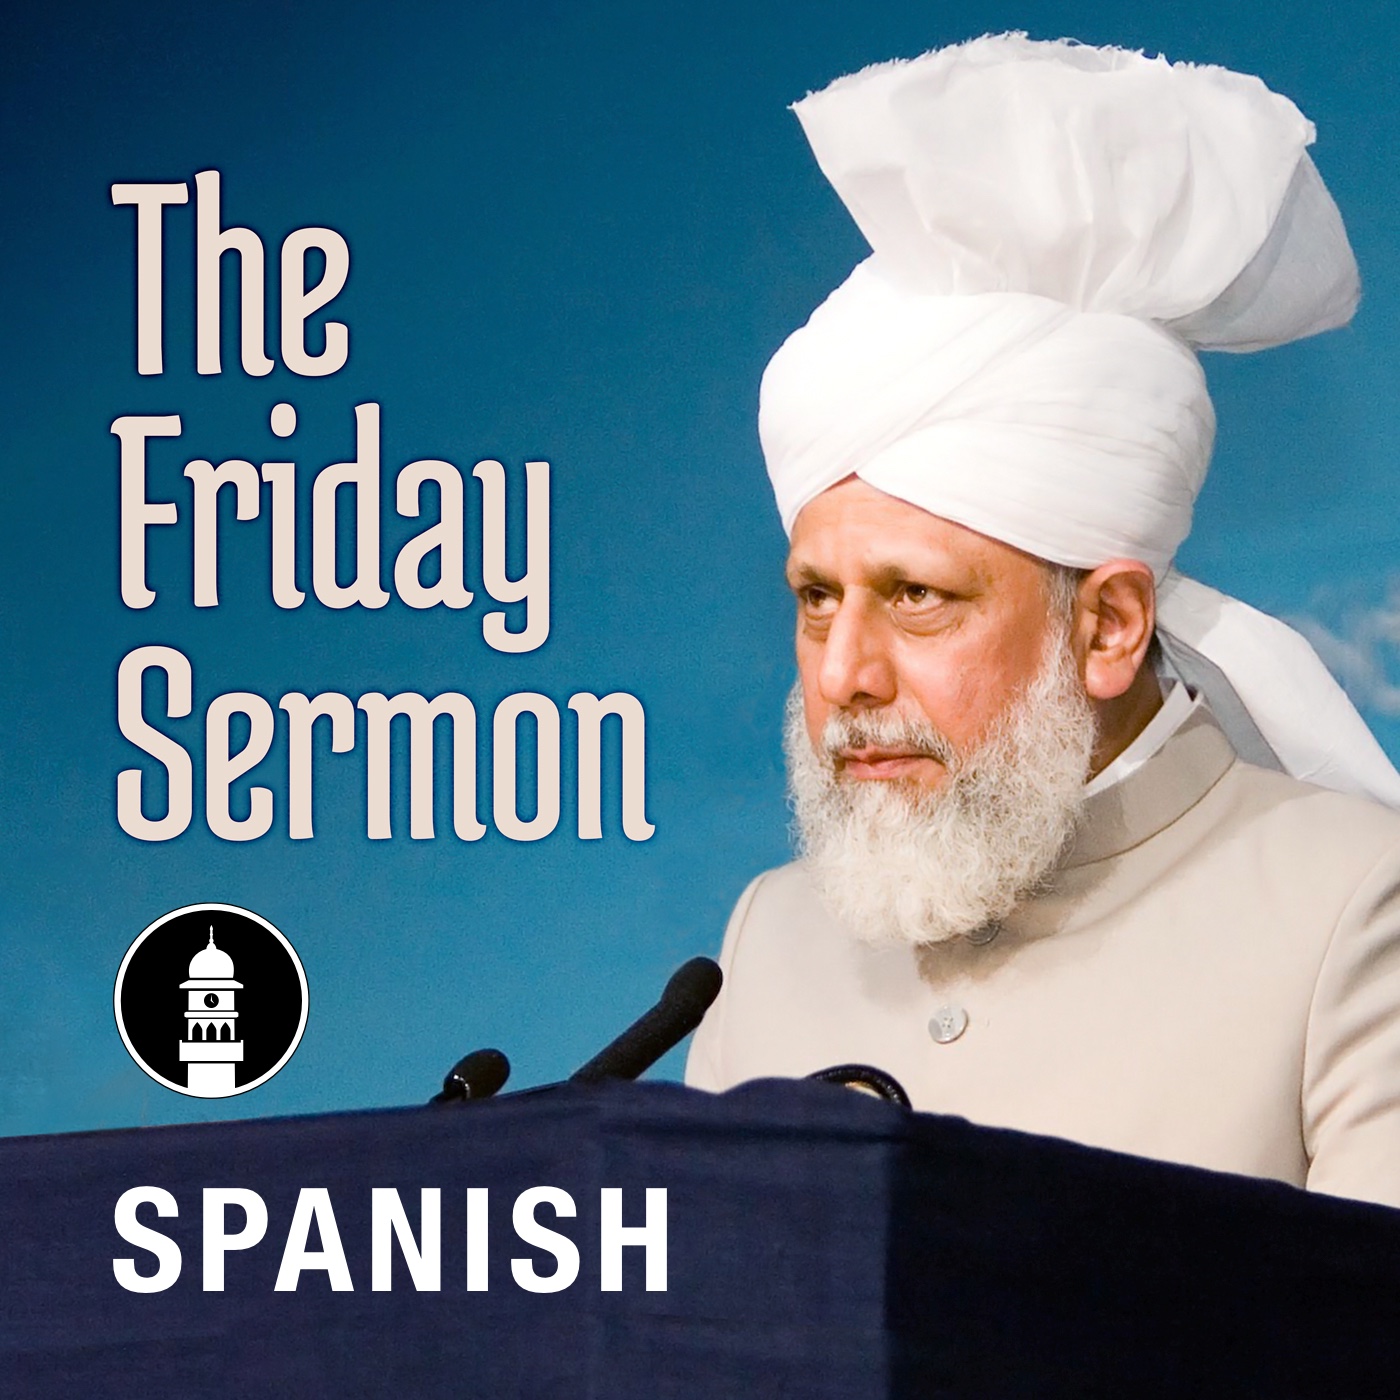 Spanish Friday Sermon by Head of Ahmadiyya Muslim Community